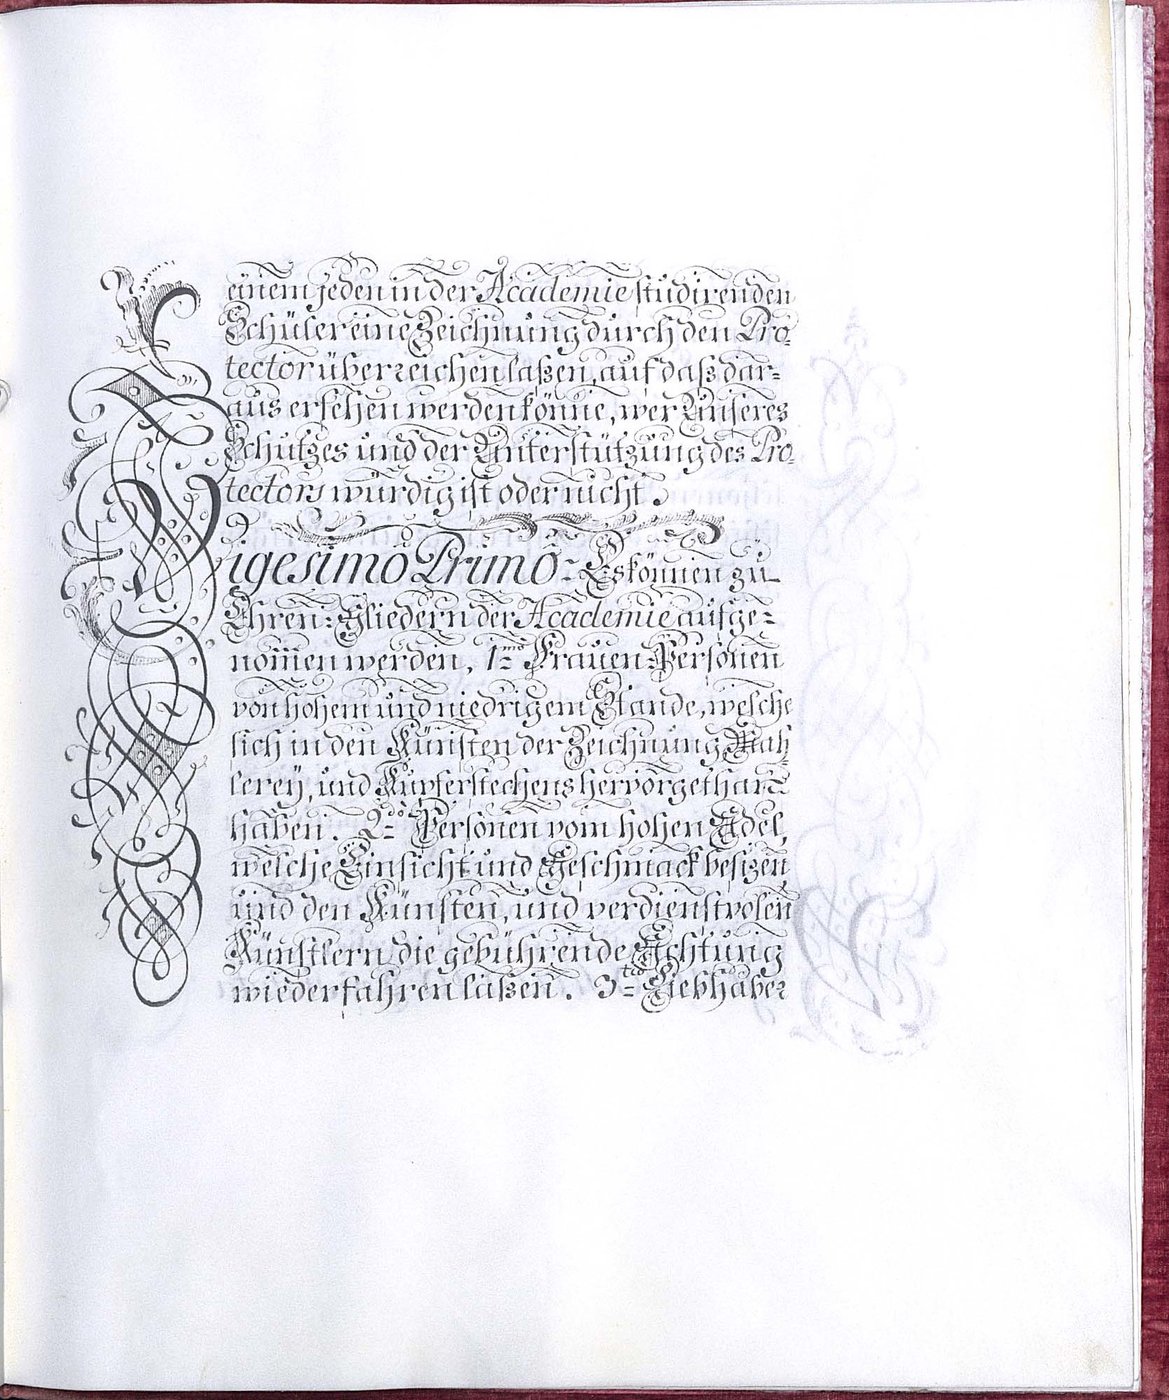 Seite aus den Kupferstecherstatuten, schwarze Tinte auf Pergament, prachtvolle Verzierungen der Initialen, besonders des Buchstaben V.